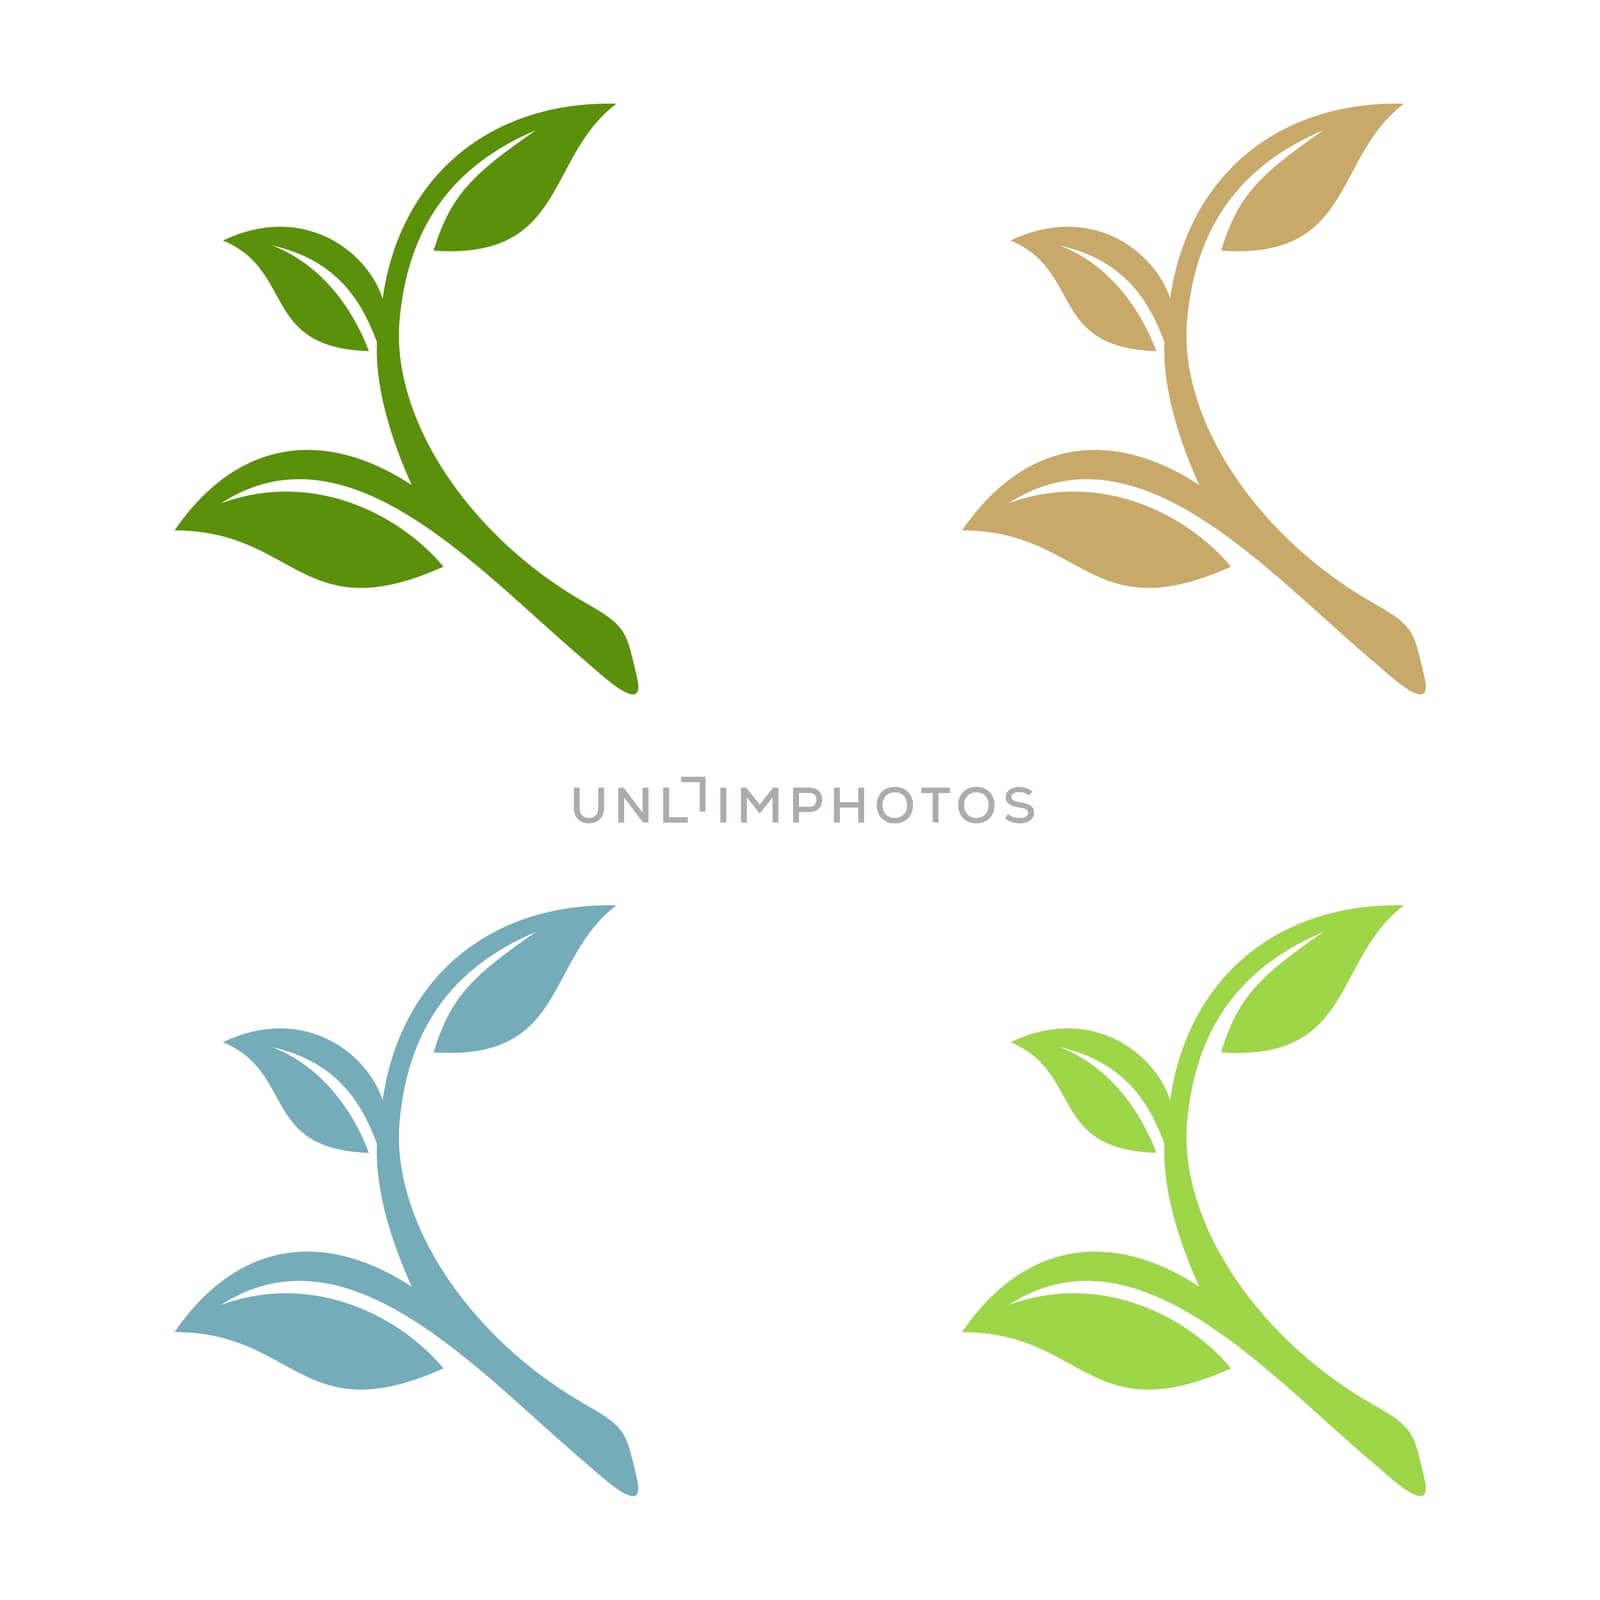 Green Leaf Ecology Logo Template Illustration Design. Vector EPS 10.